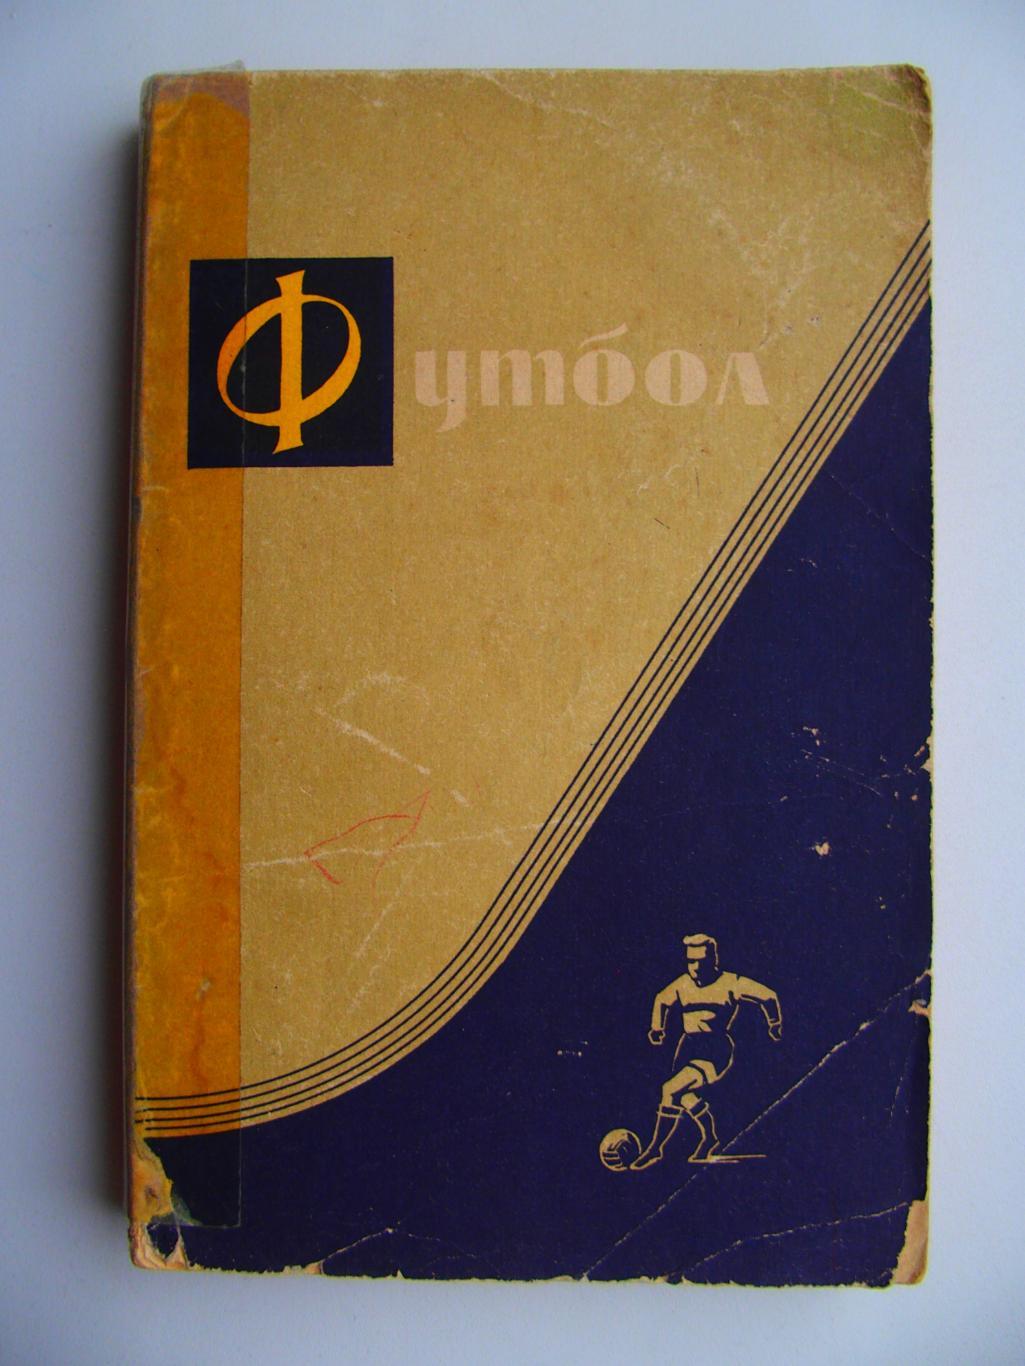 Футбол. Редактор А. В. Комаров (1962). Мягк. обложка. 260 стр.